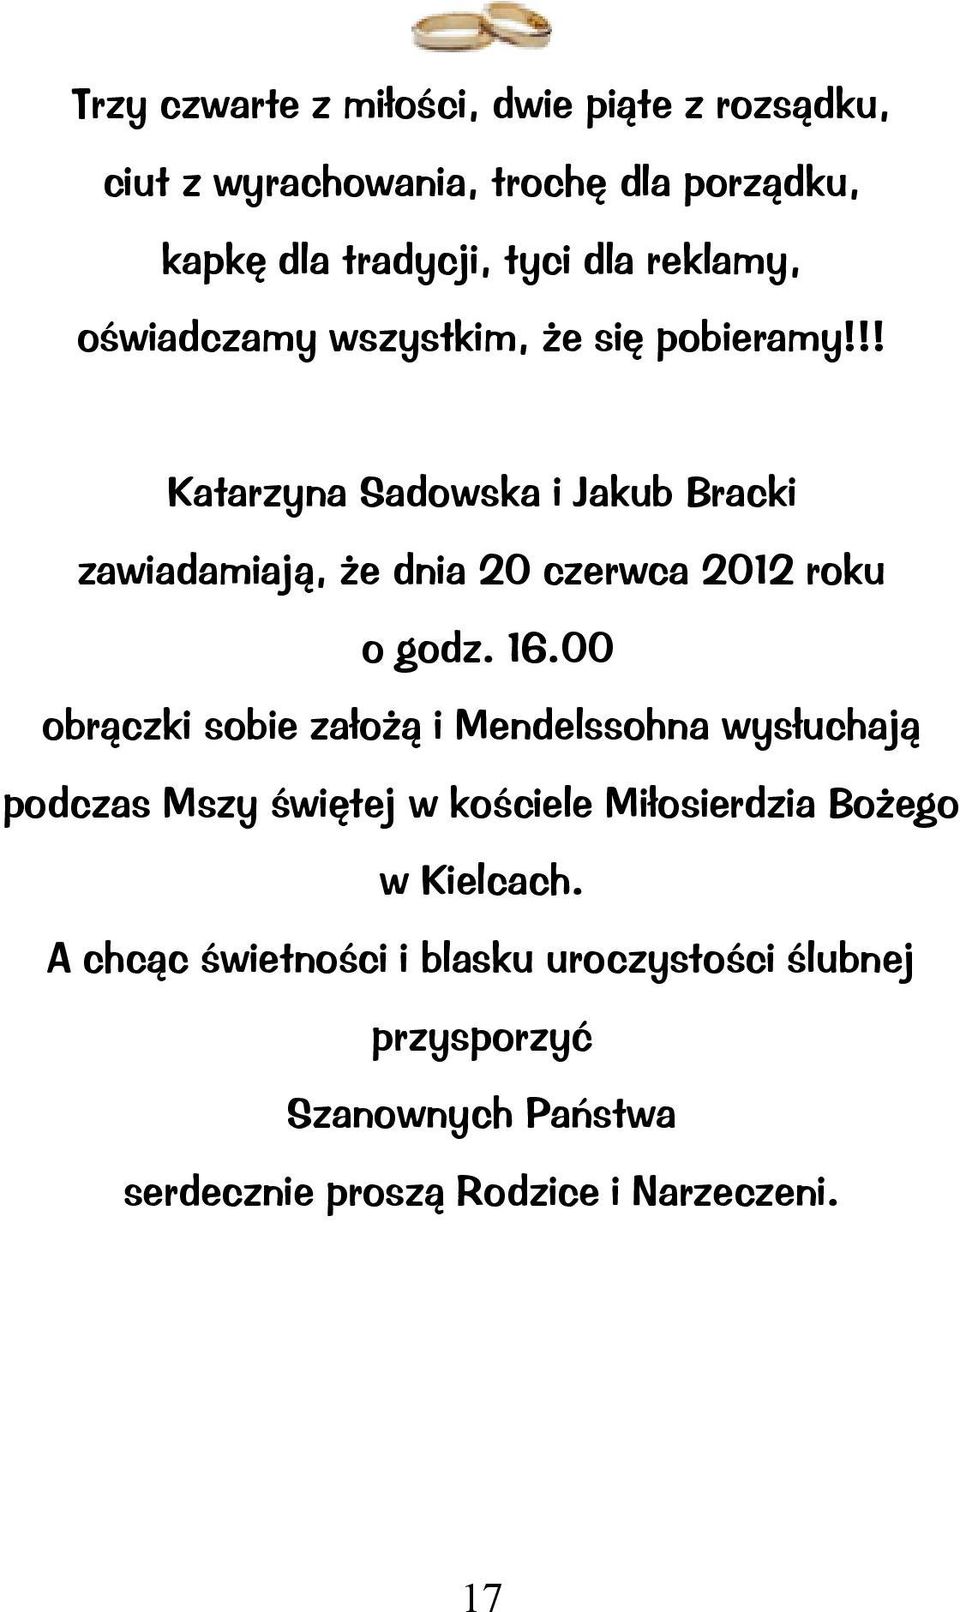 !! Katarzyna Sadowska Jakub Brack zawadamają, że dna 20 czerwca 2012 roku o godz. 16.